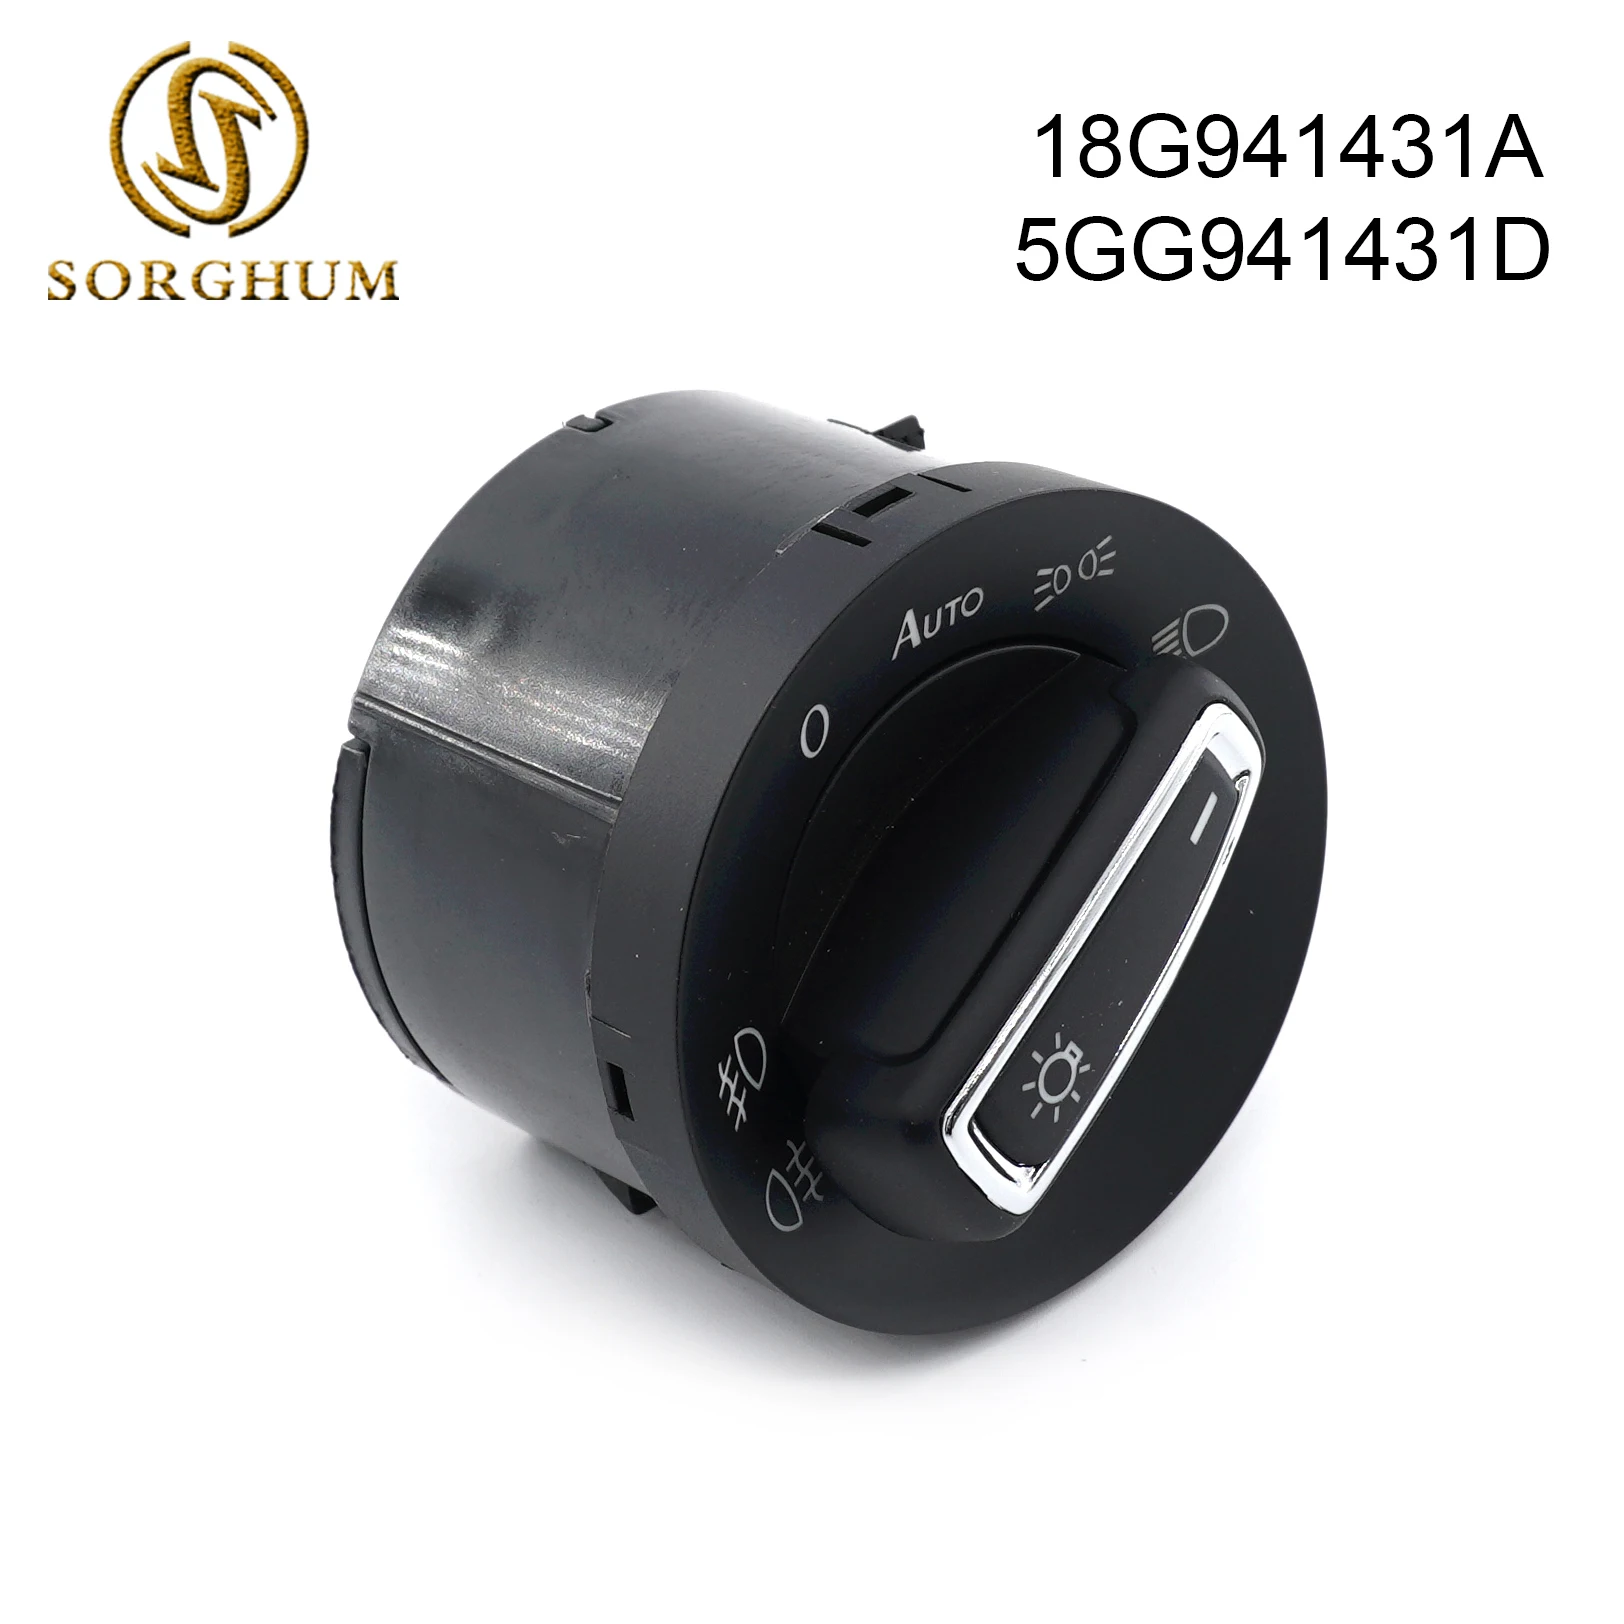 

Sorghum 18G941431A 5GG941431D 18G 941 431A 5GG 941 431D Headlight Head Lamp Light Control Switch Fog Light Switch For VW Golf 7